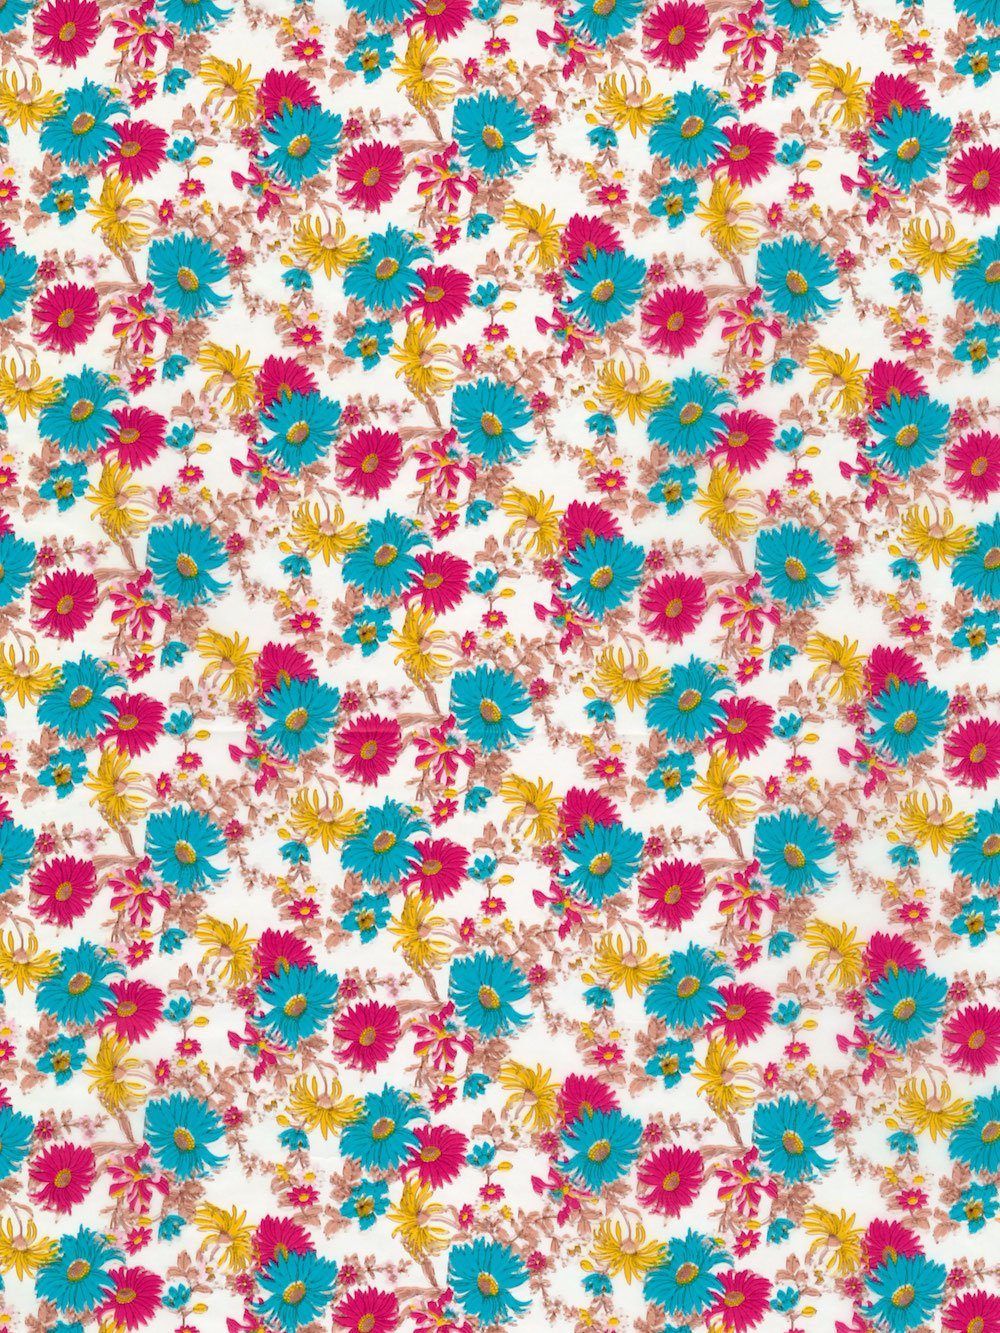 H-Erzmade Zeichenpapier Décopatch-Papier 683 Blumen türkis/pink/gelb, 30 x